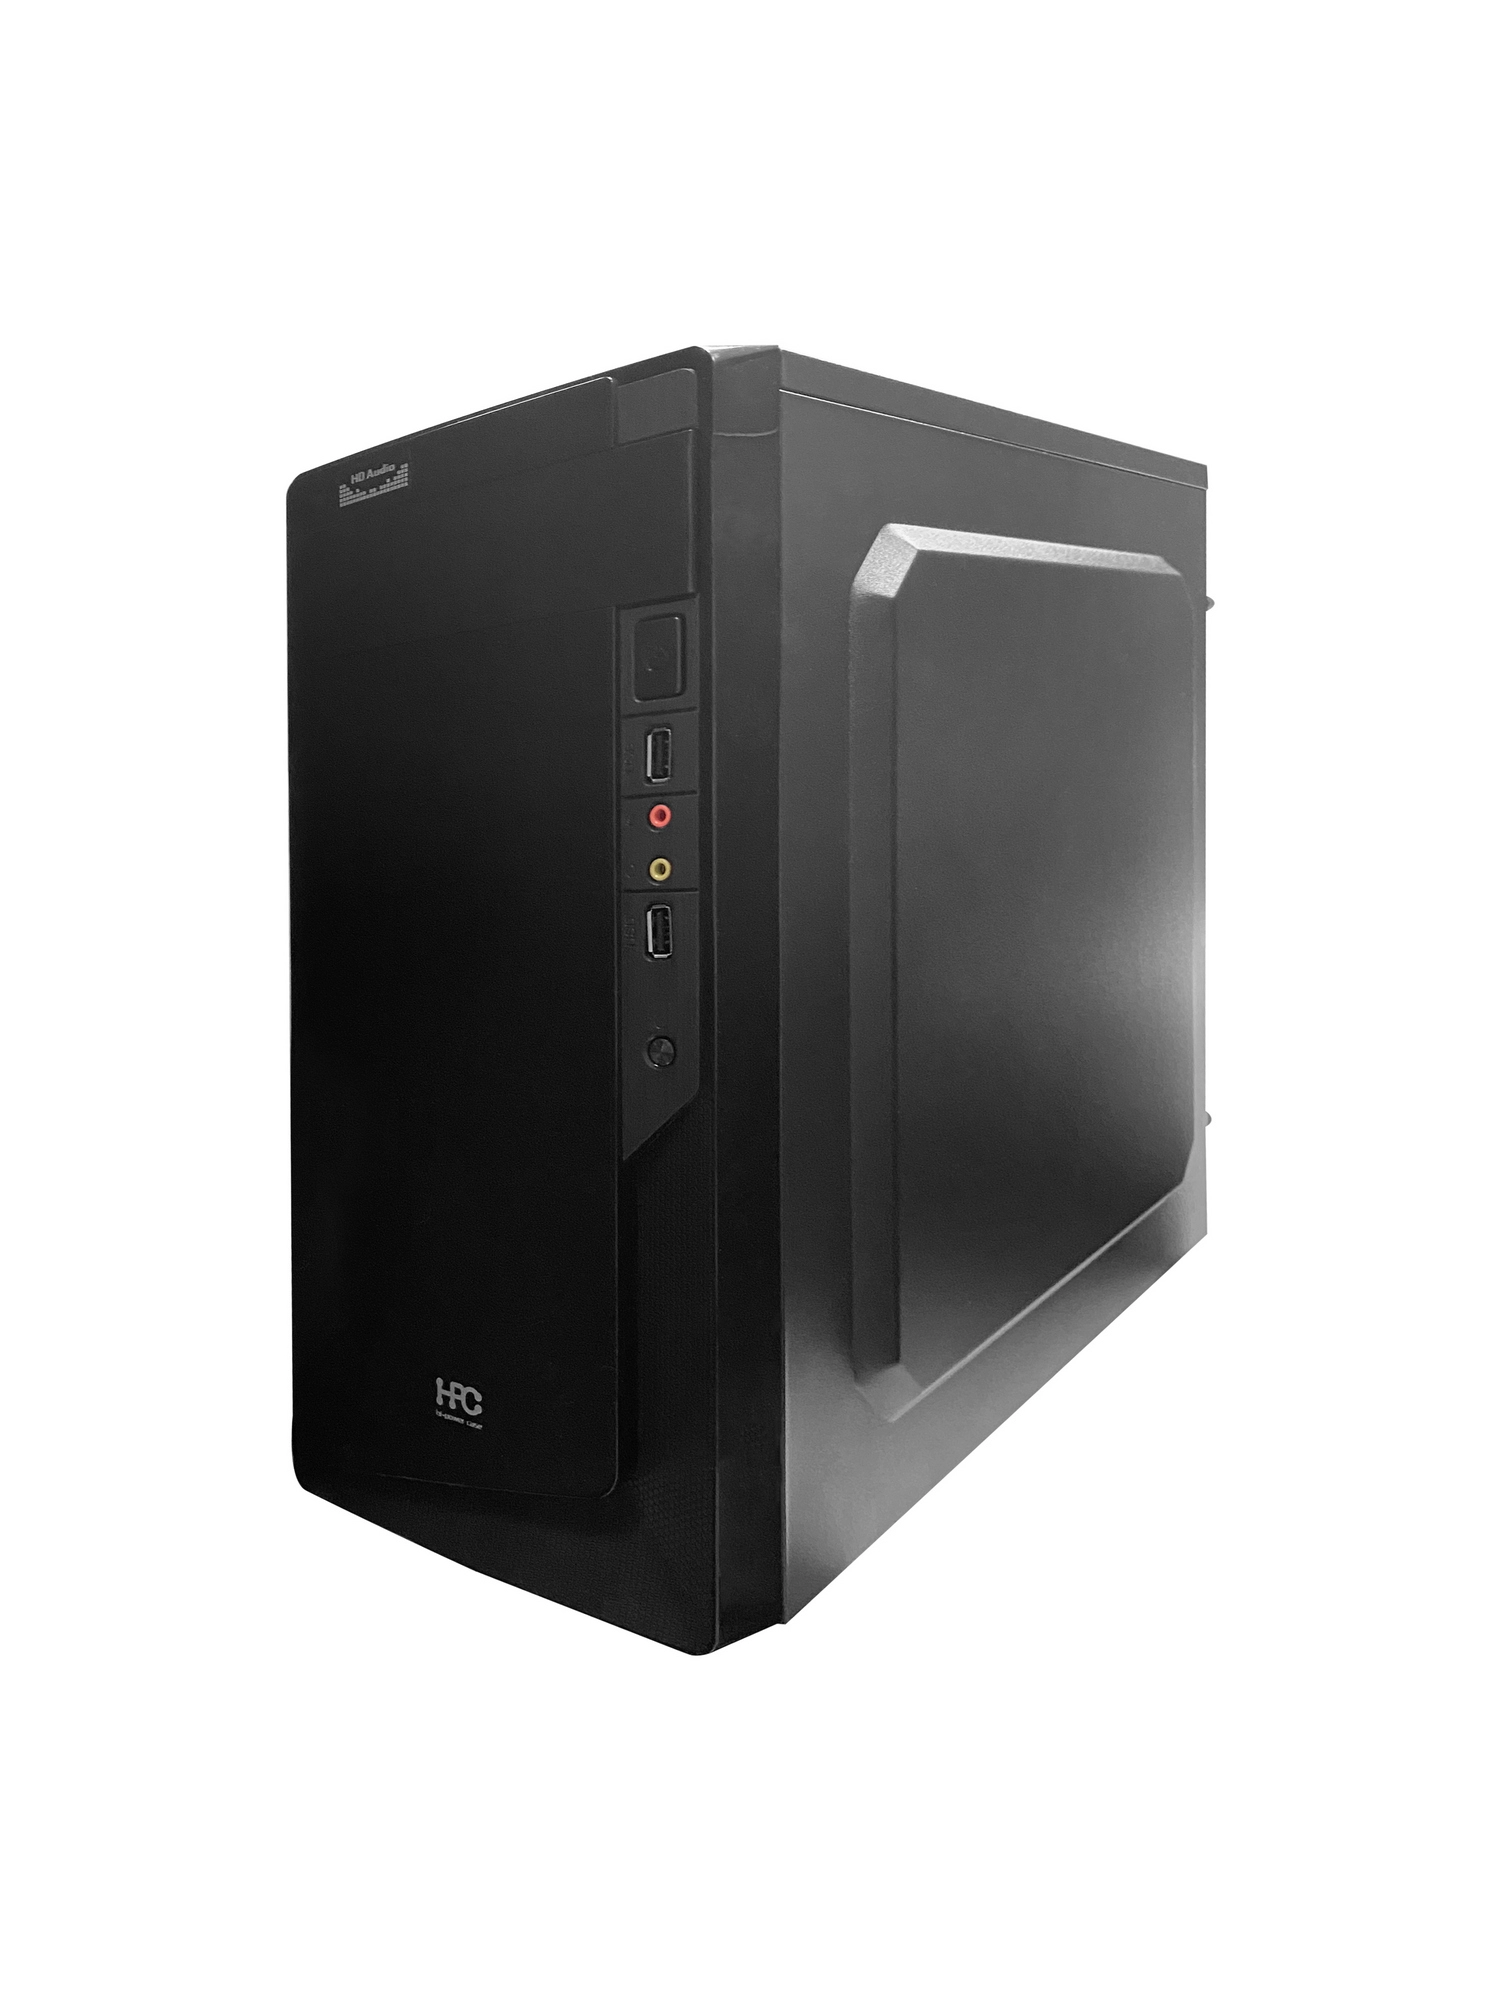 Компьютер ATOL PC1037MP - Home #4 v2.3 / AMD Ryzen 5 2400G / 8GB / 256GB SSD / Black